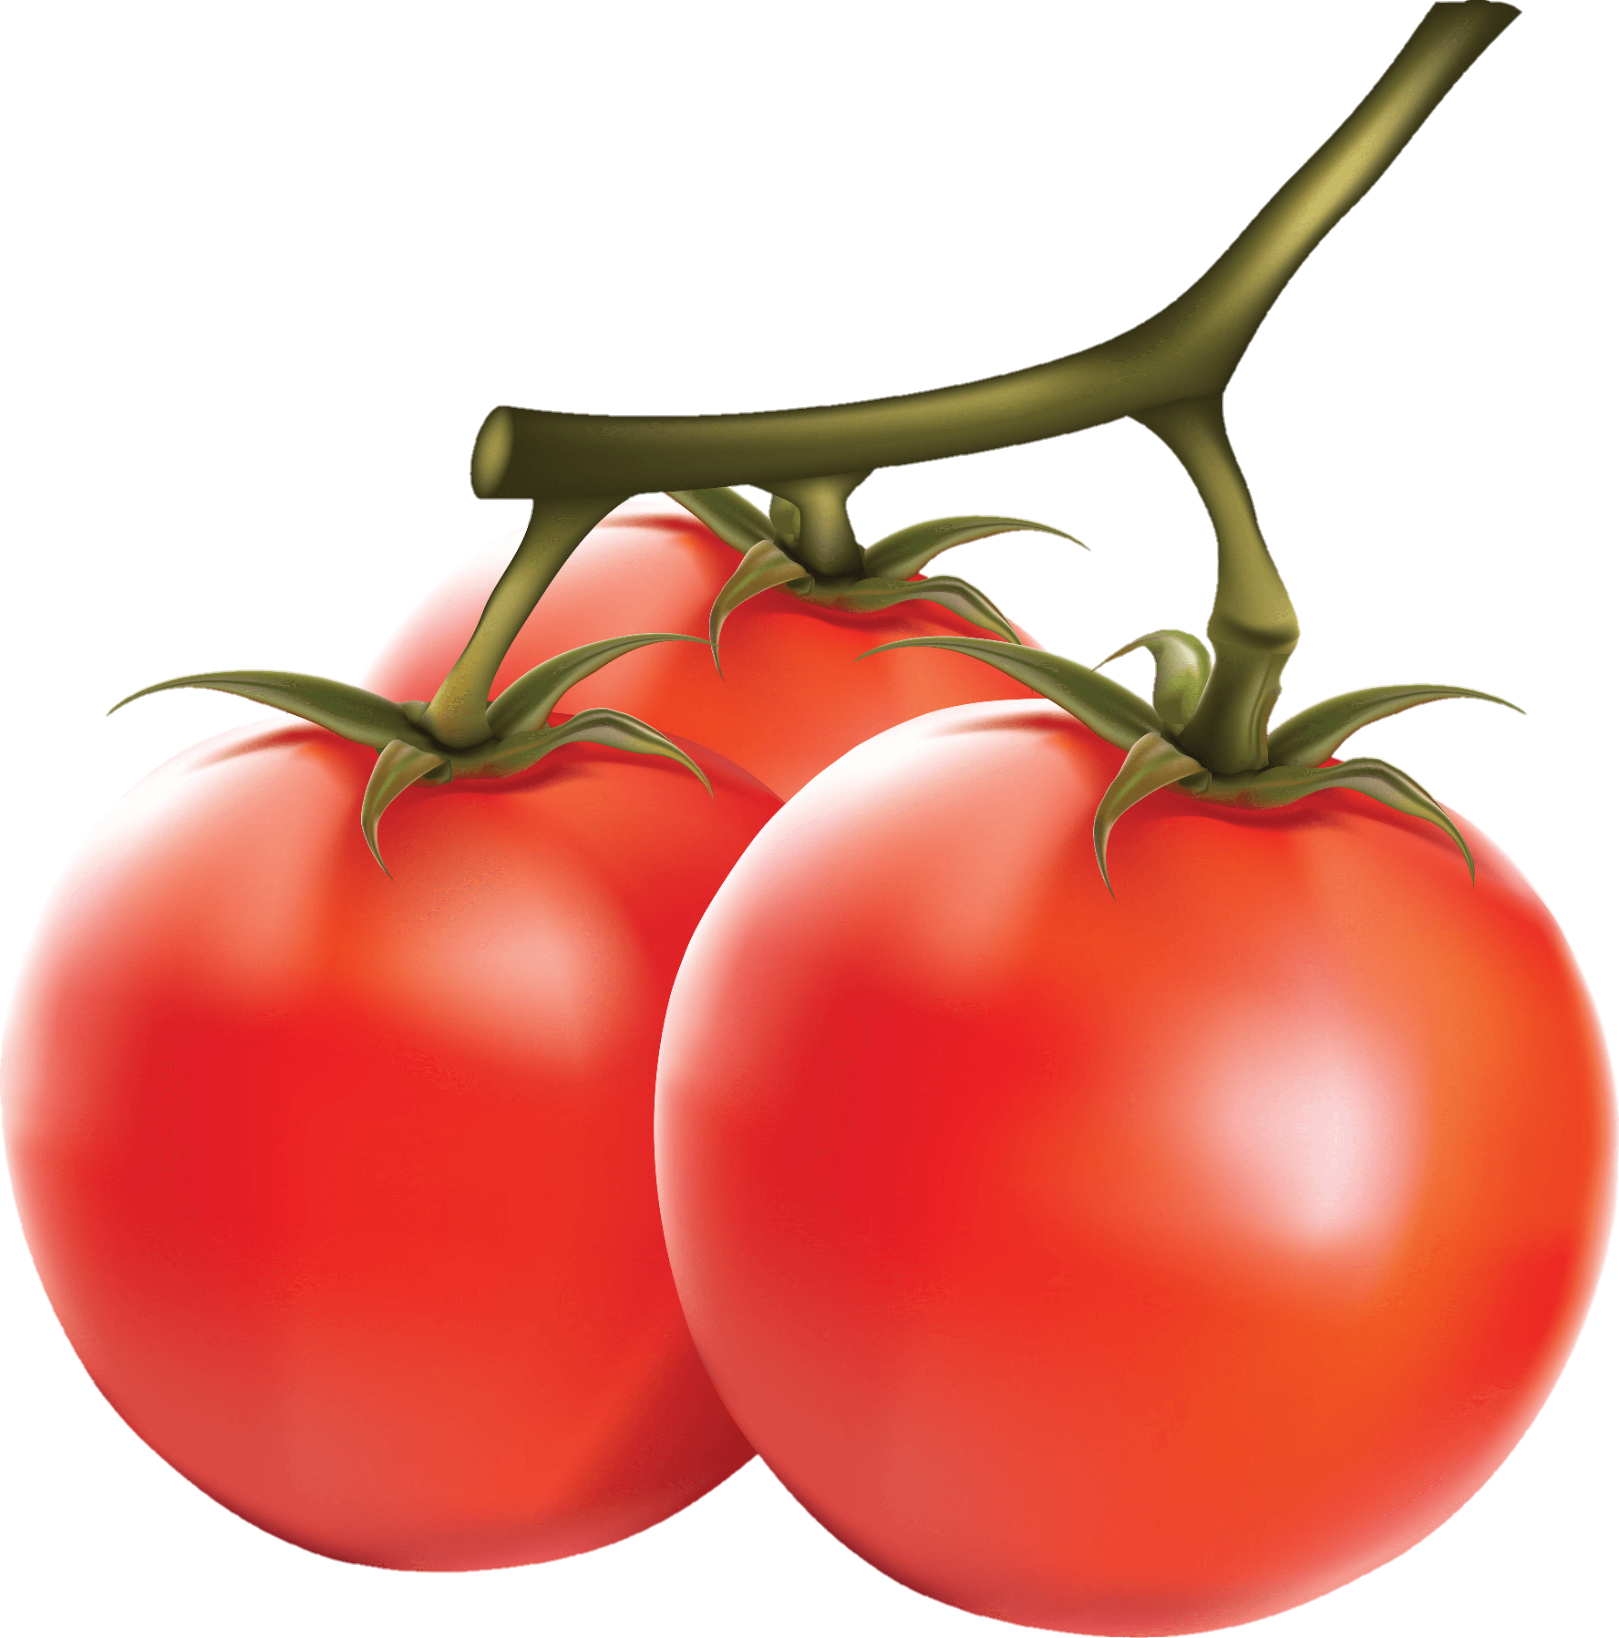 Tomato-26-2